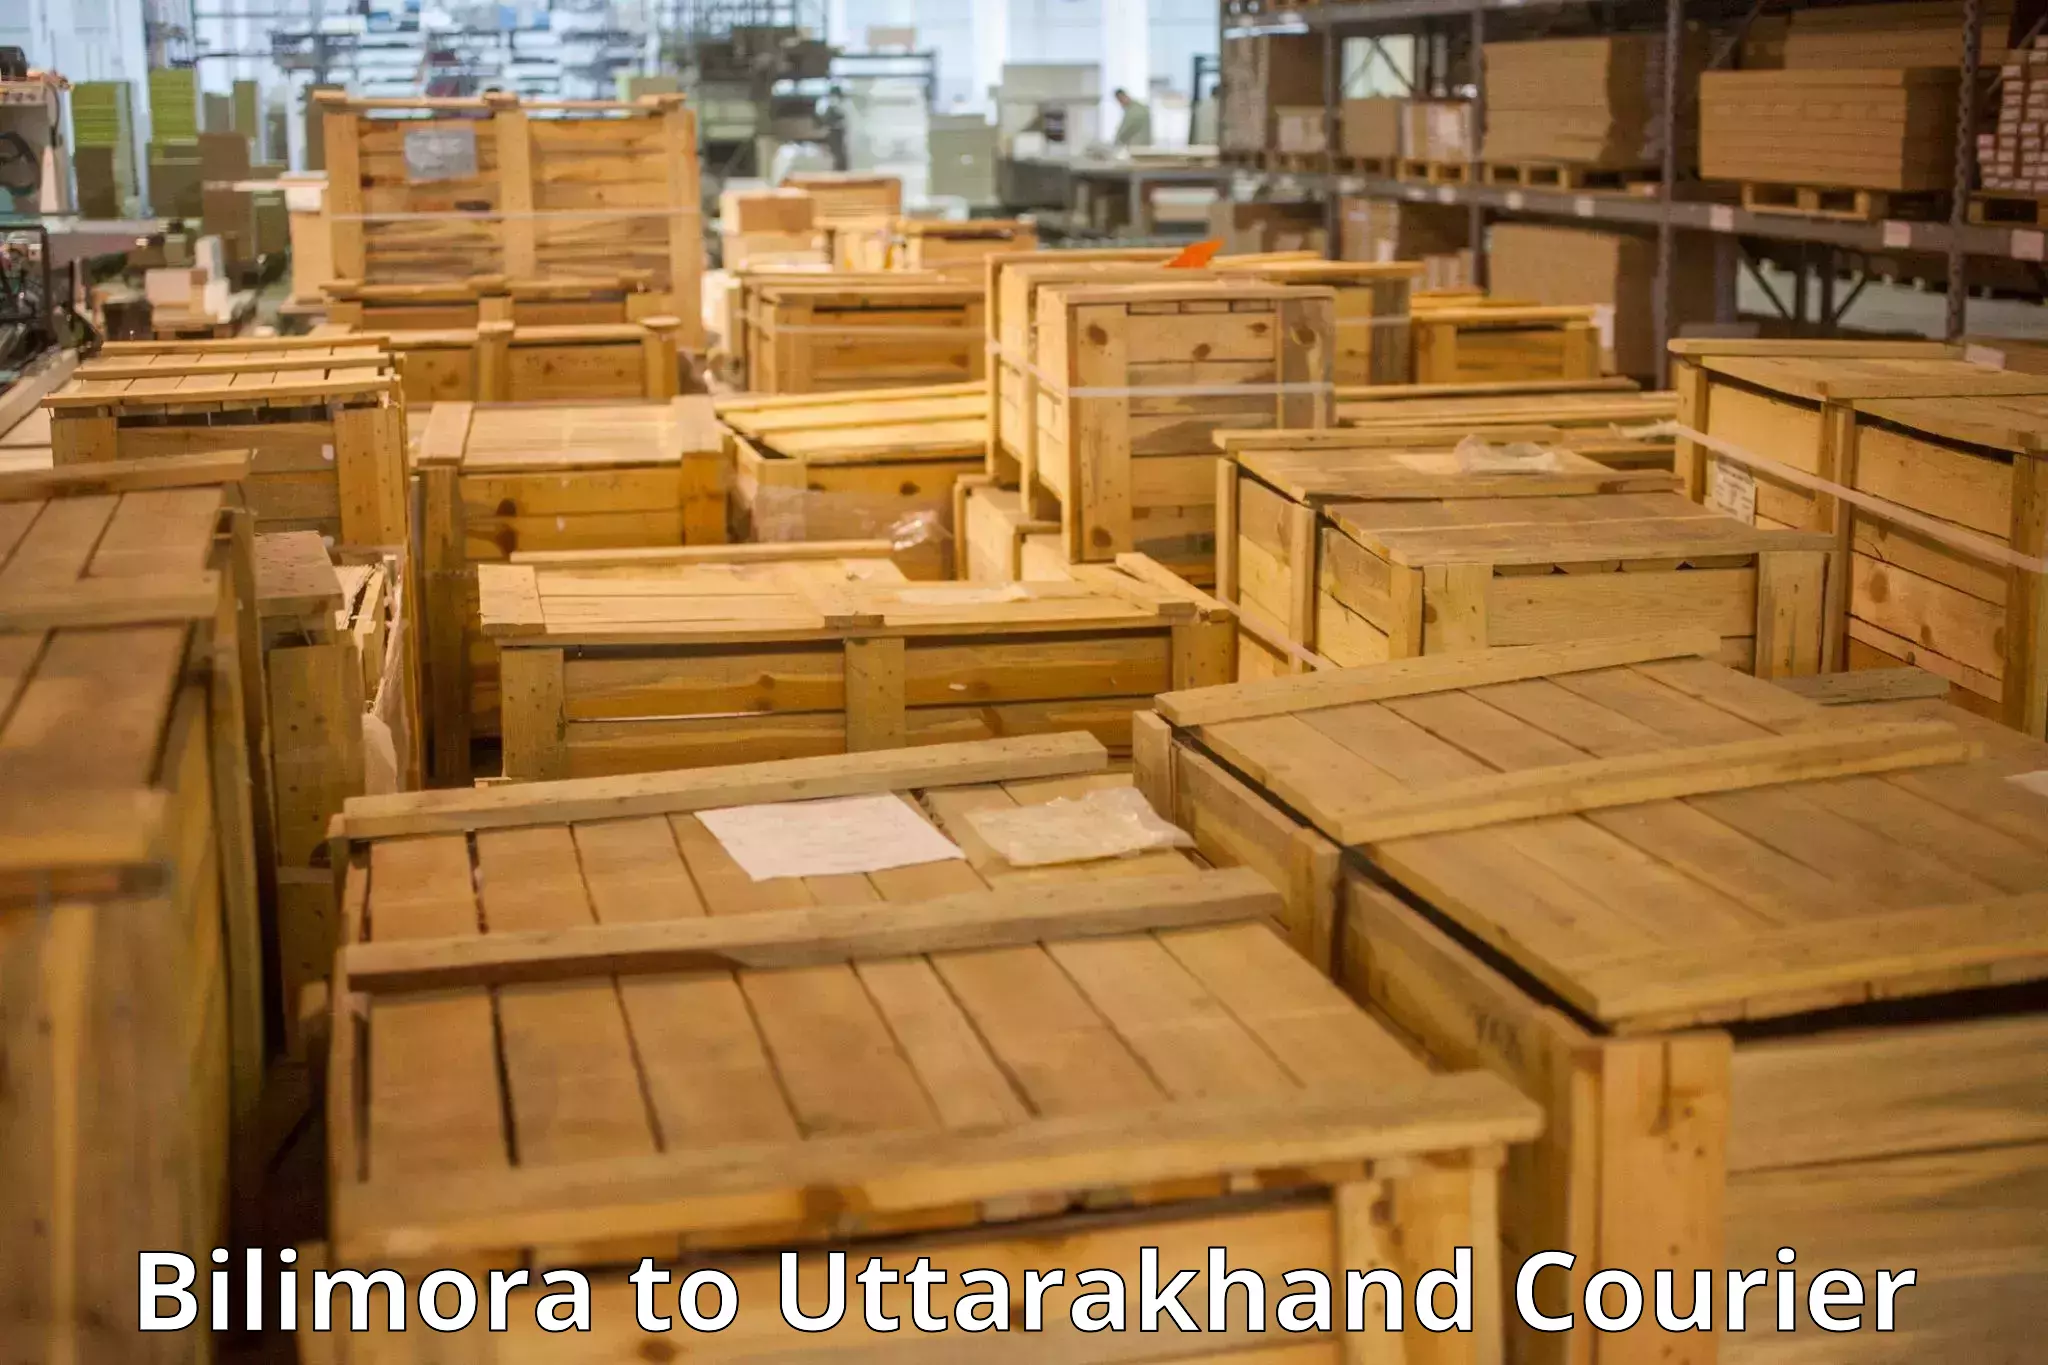 Express luggage delivery Bilimora to Uttarakhand